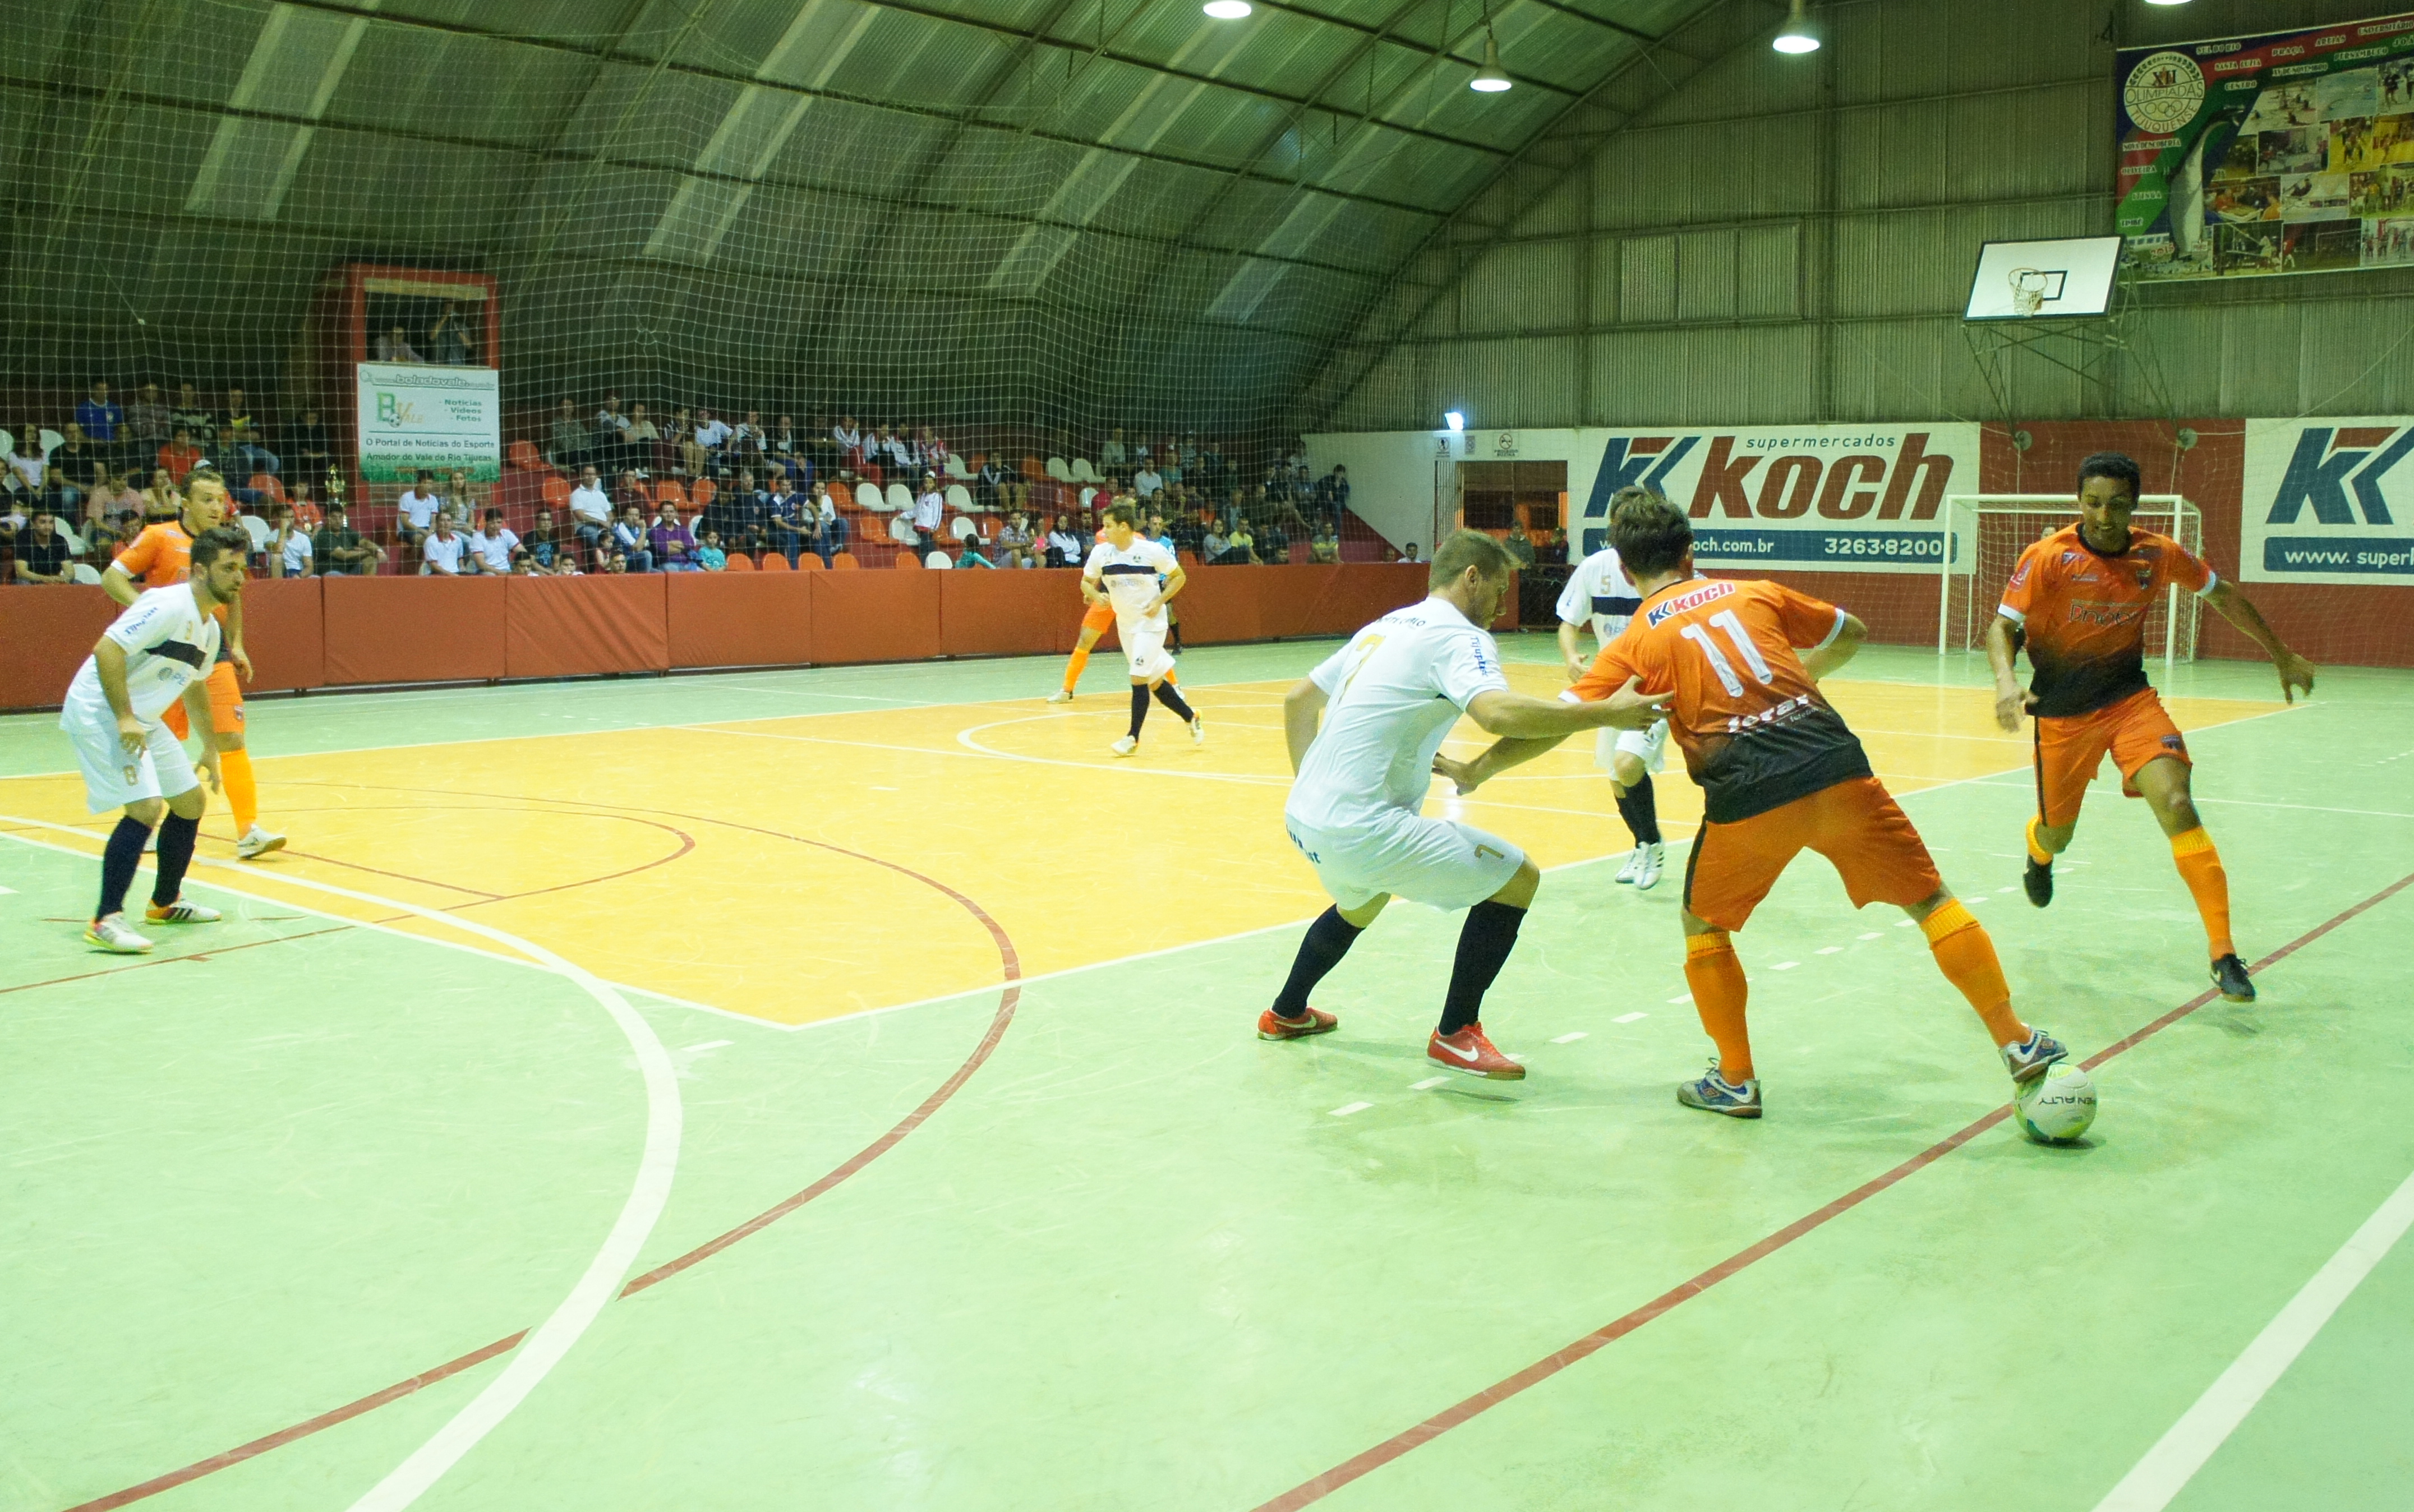 Comea o campeonato de futsal em Tijucas